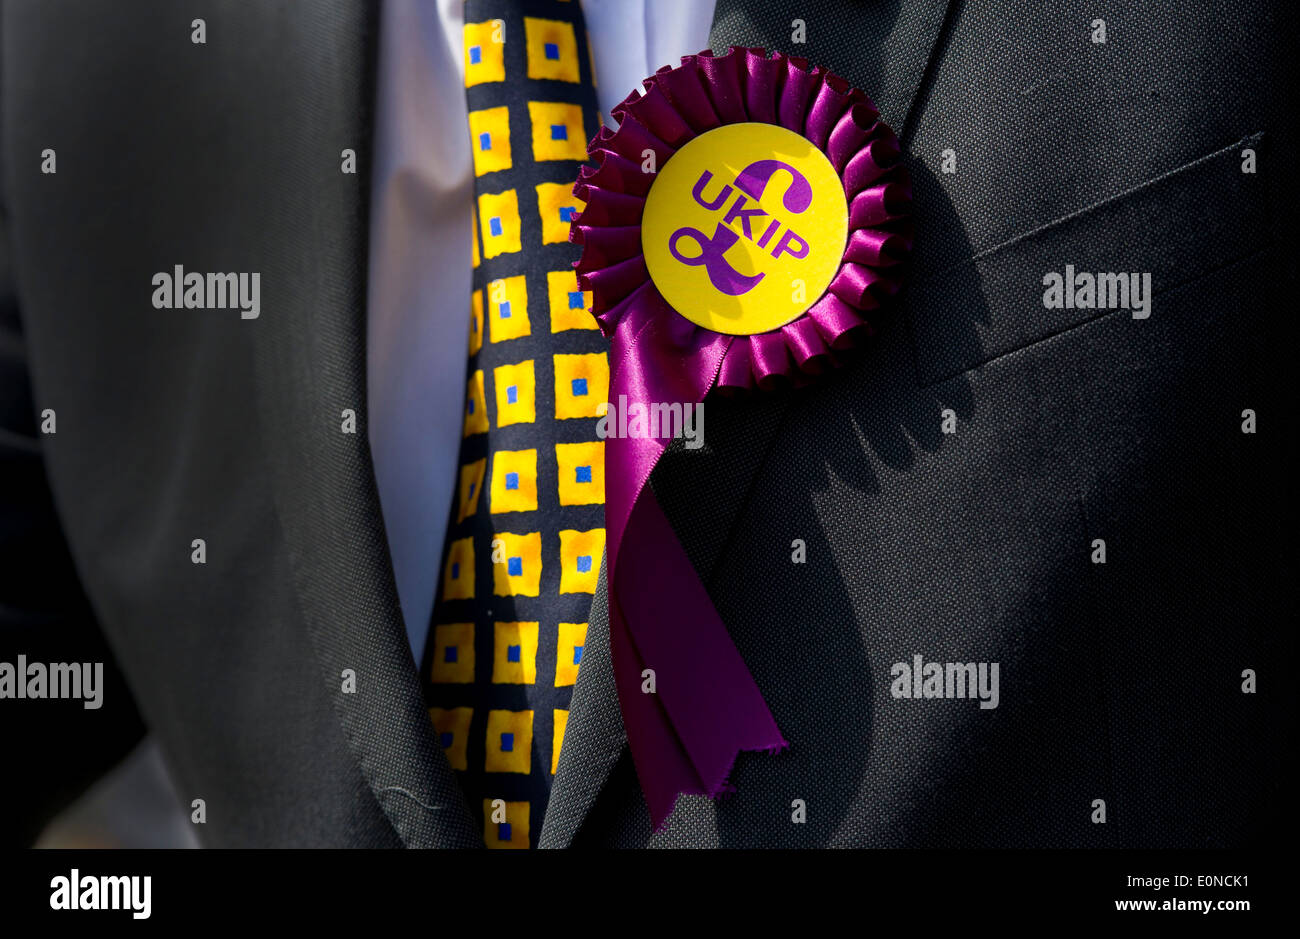 Un candidat du Parti pour l'indépendance du Royaume-Uni porte une rosette de l'UKIP lors d'une campagne électorale à Swansea, Pays de Galles. Banque D'Images